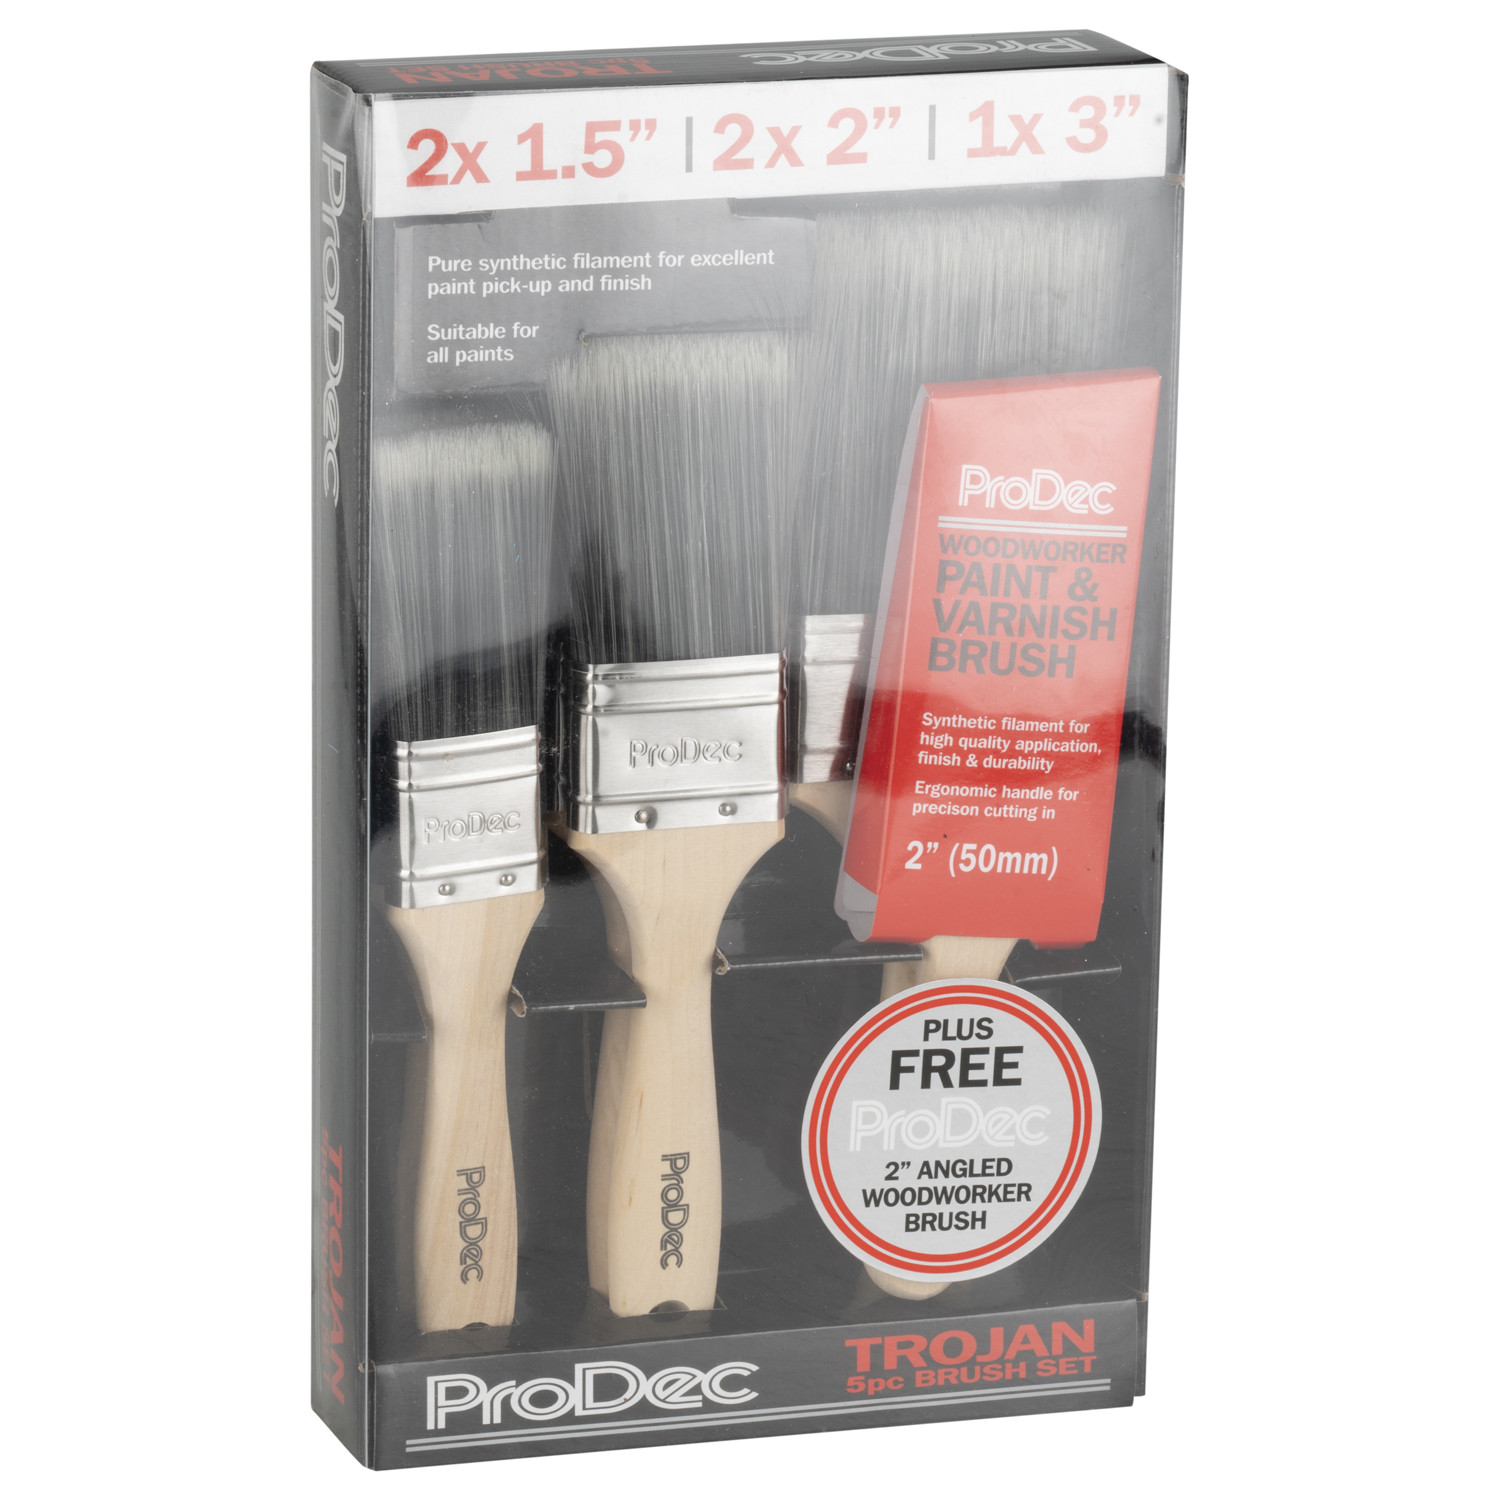 ProDec 5 Pack Trojan Paint and Varnish Brush Set Image